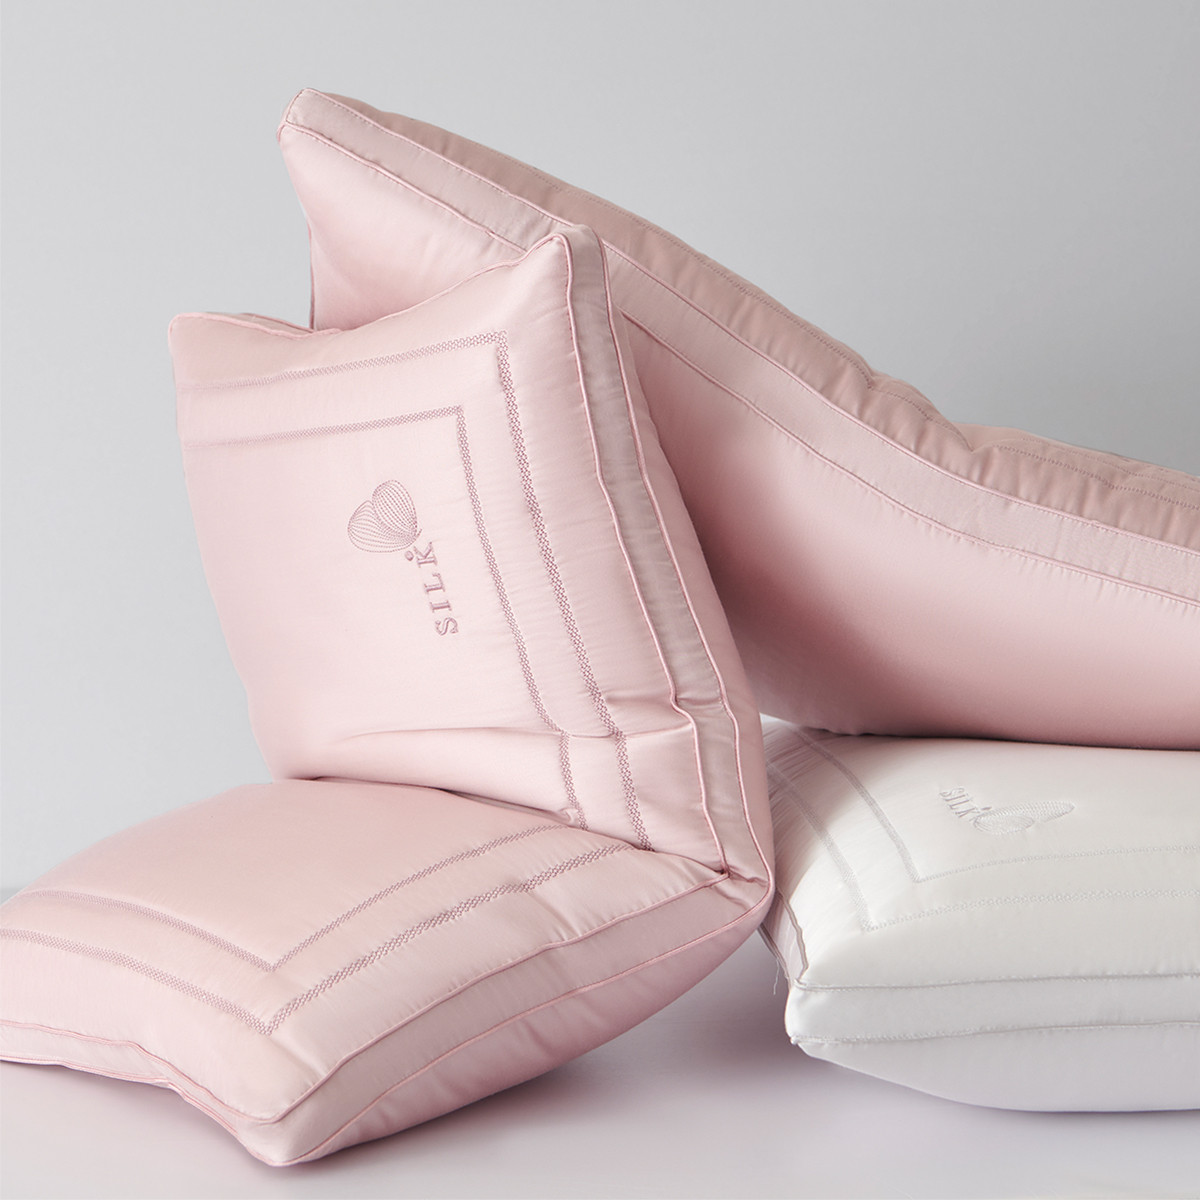 柔軟親膚蠶絲枕芯 舒爽透氣有助眠 長方形單人枕